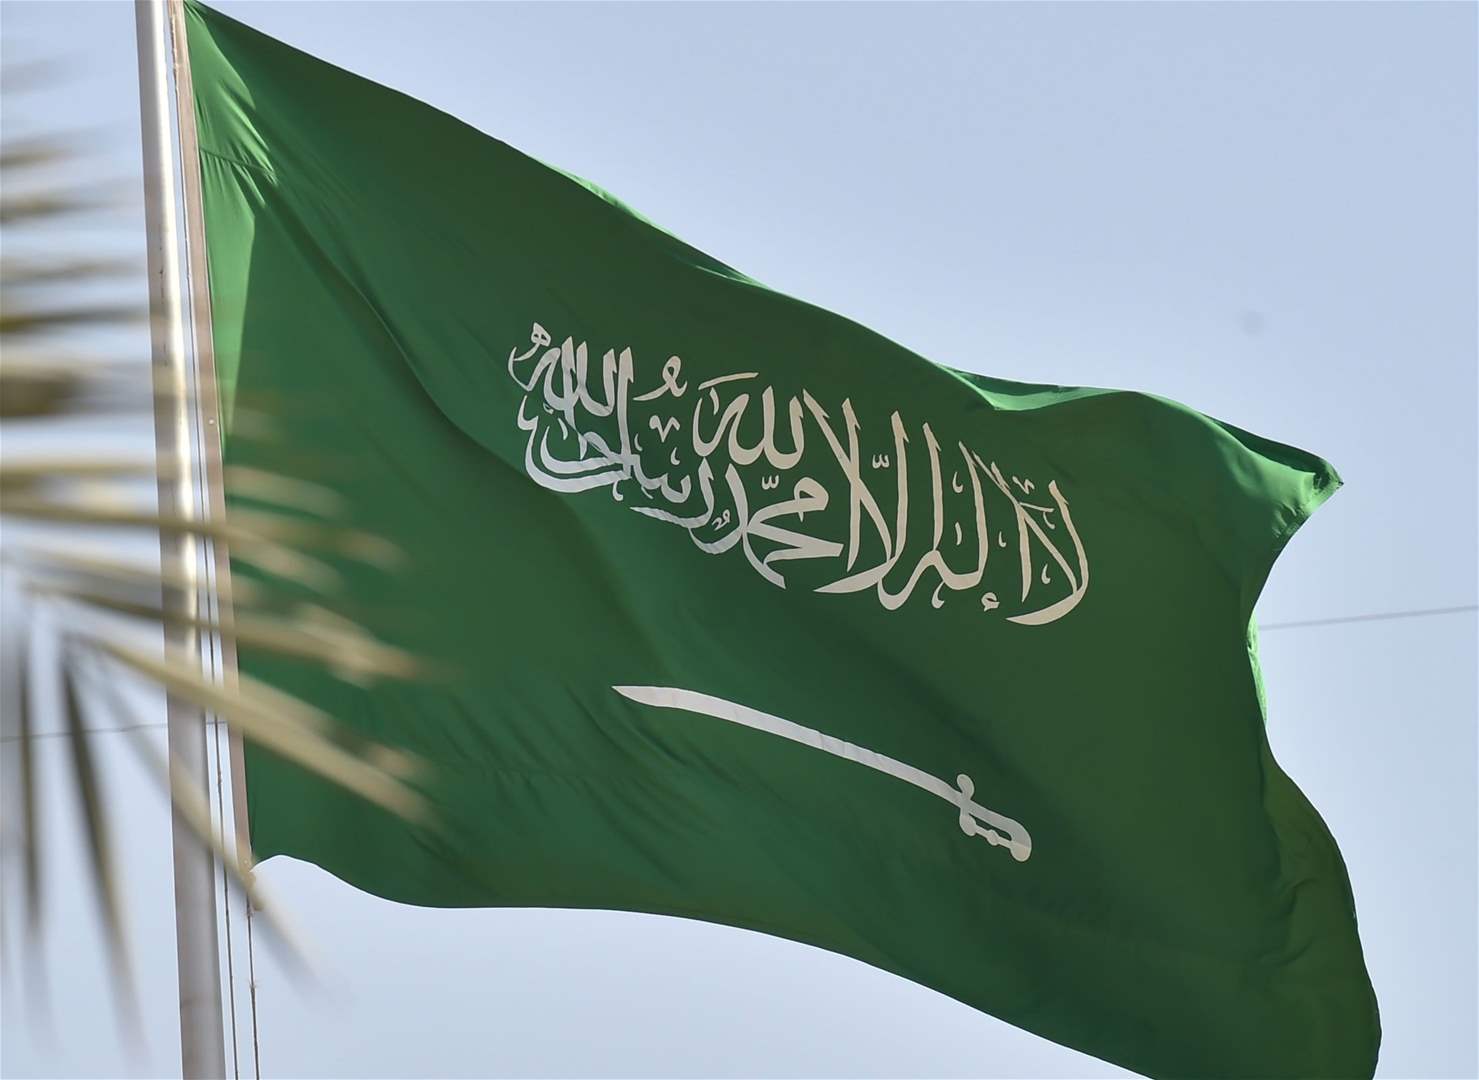  السعودية وجهت دعوة لوفد من صنعاء لاستكمال اللقاءات والنقاشات 